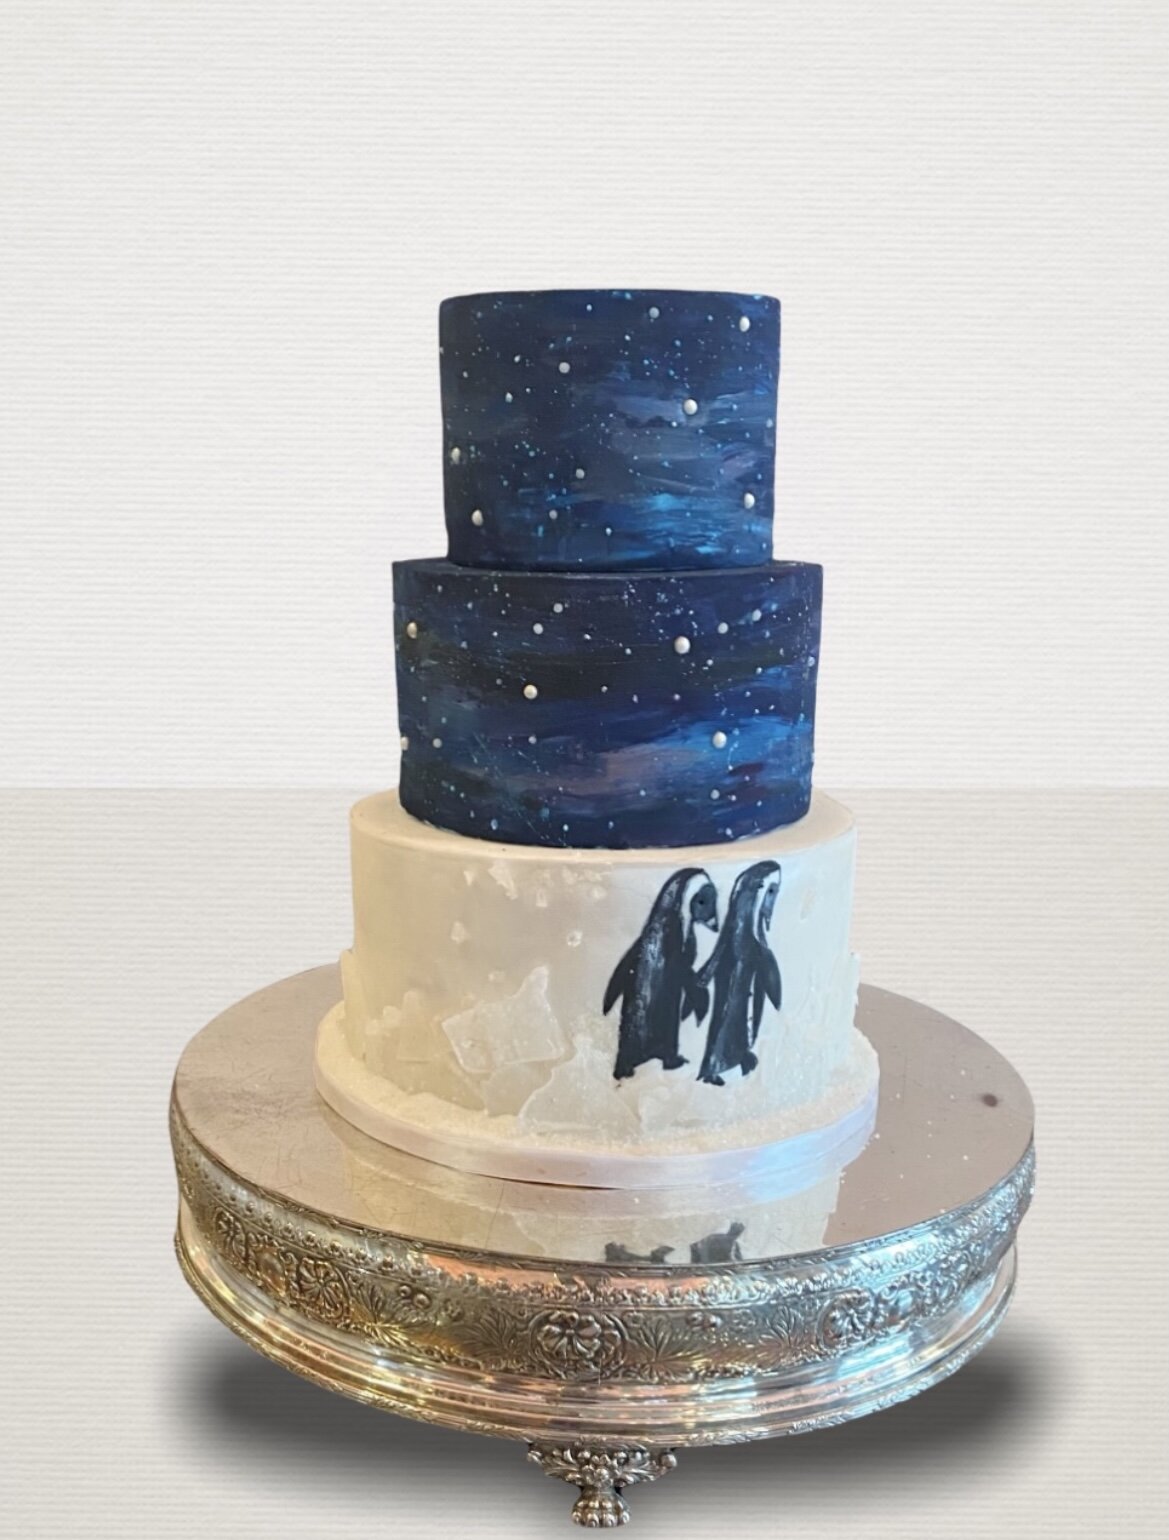 DEATHSTAR WEDDING CAKE | DEATHSTAR wedding cake for 4th May … | Flickr